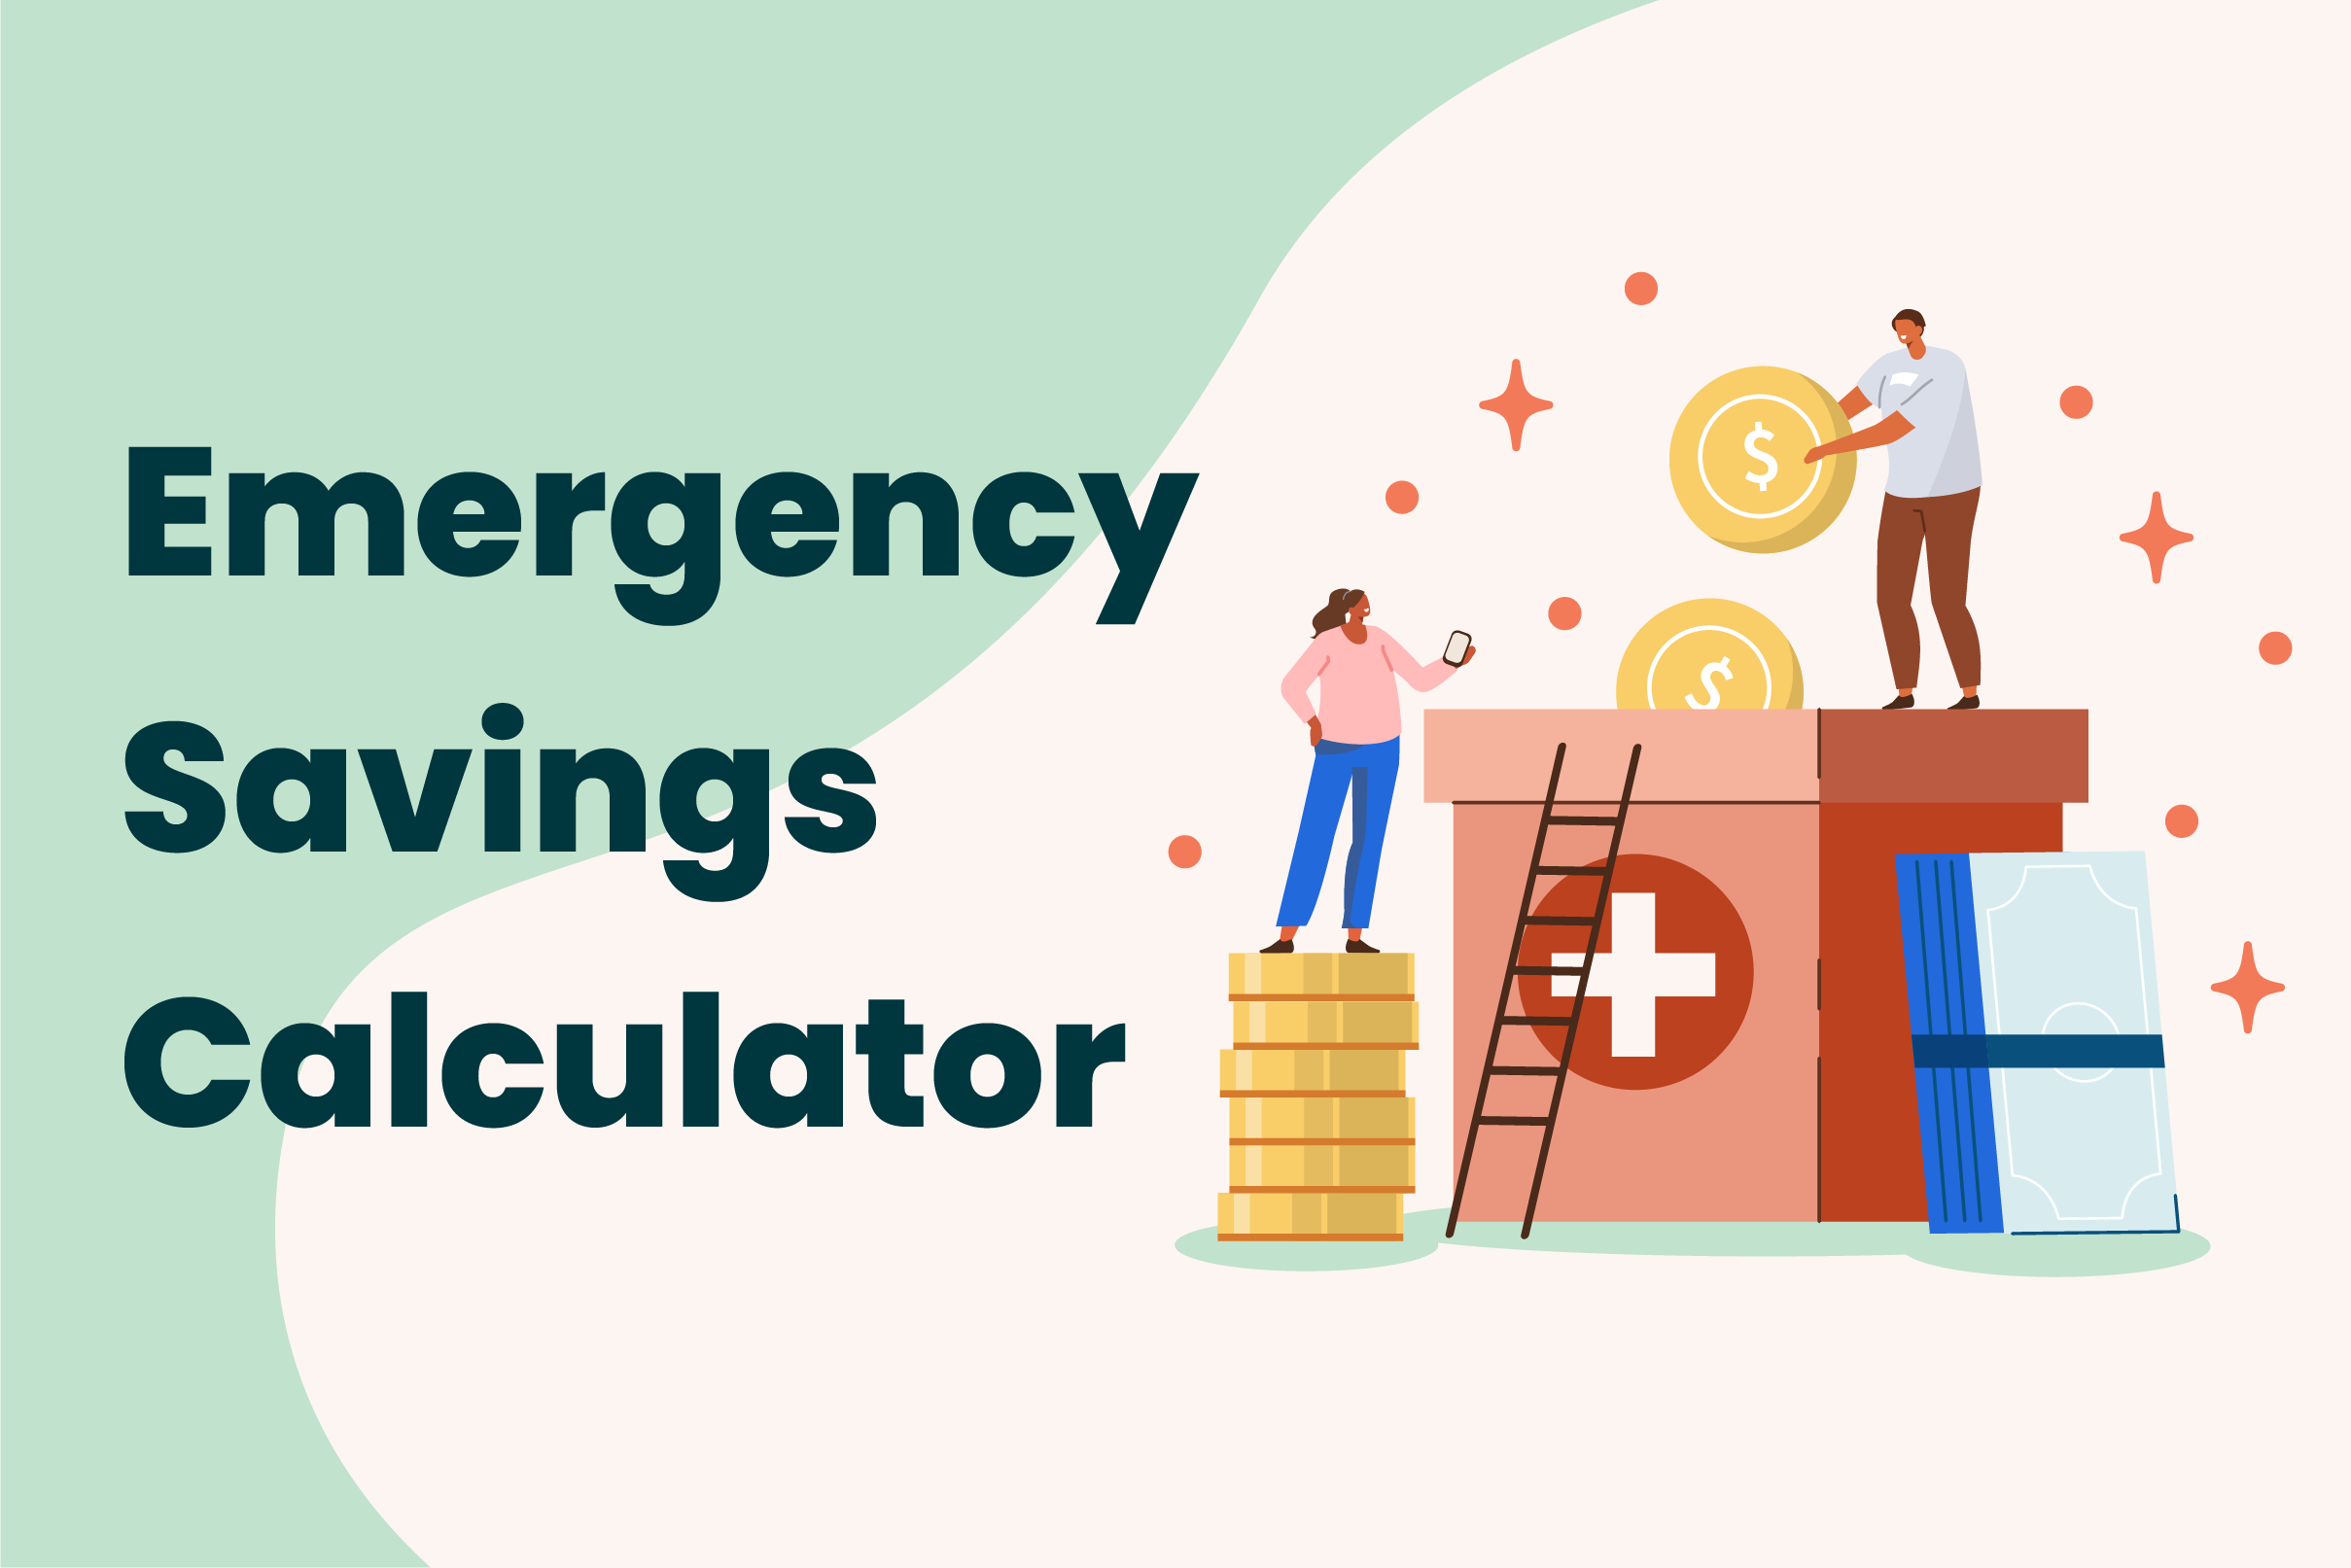 Emergency Fund Calculator